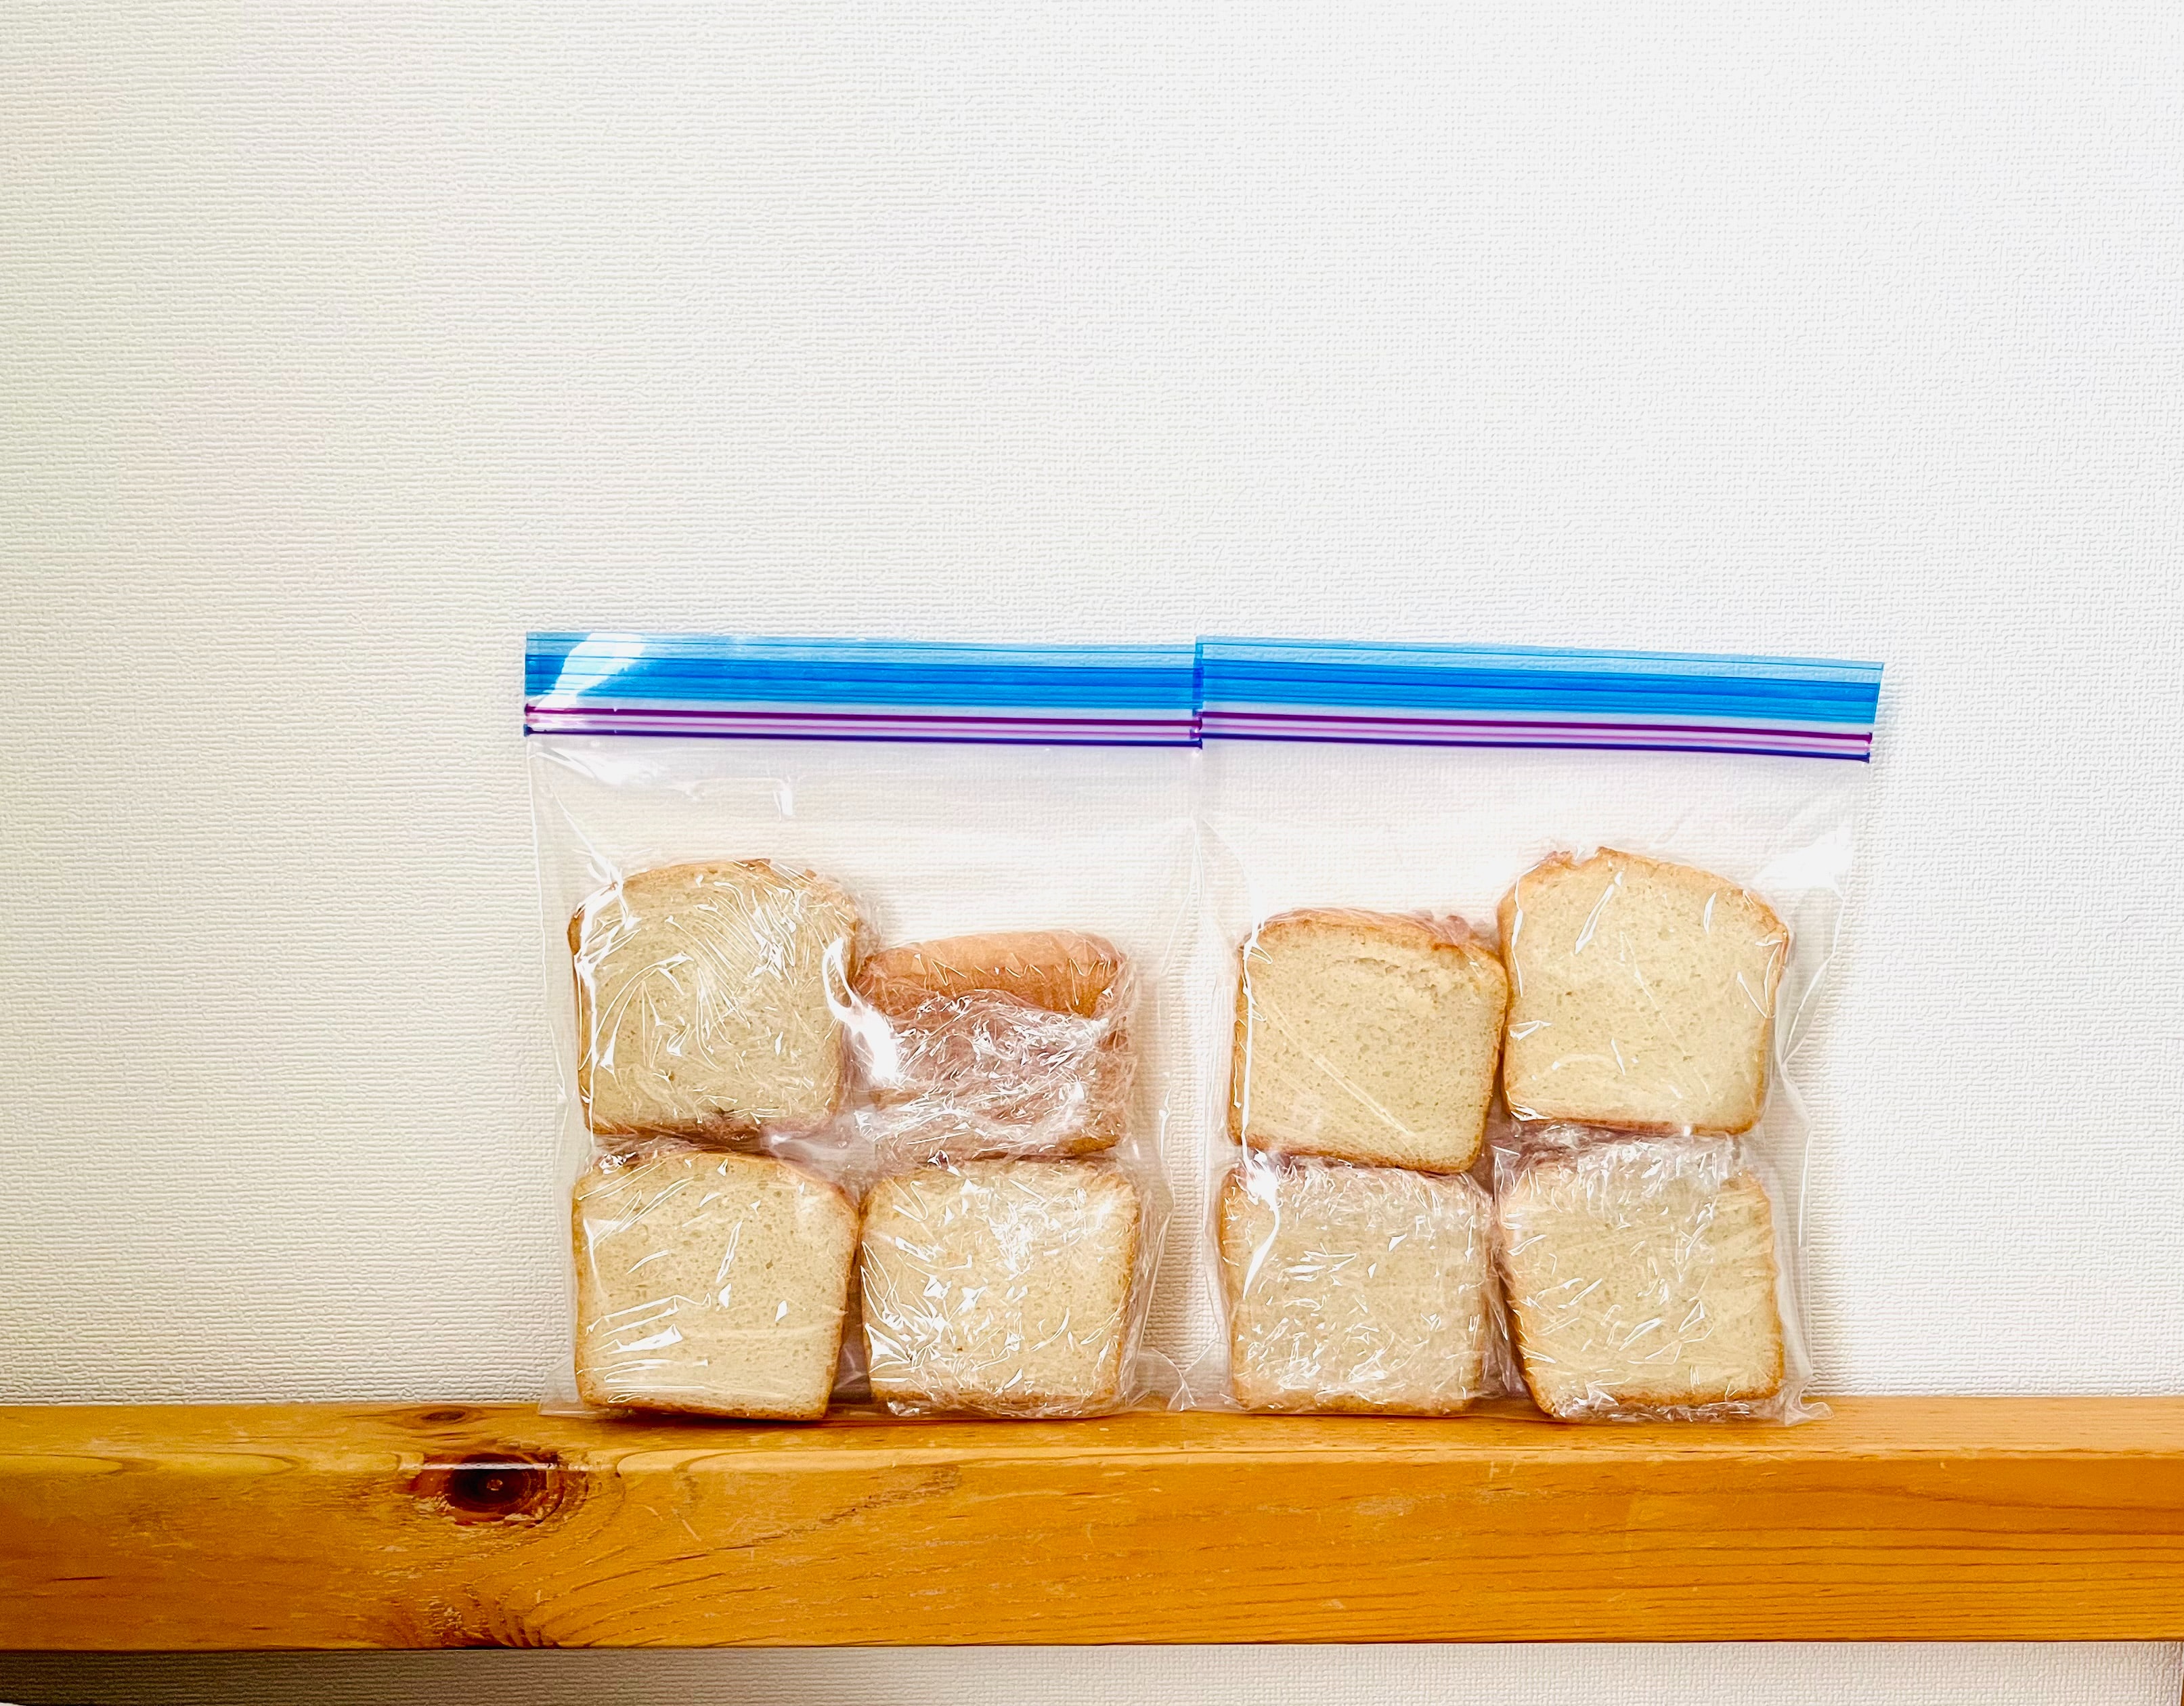 ψωμι του τοστ σε σακουλες τροφιμων